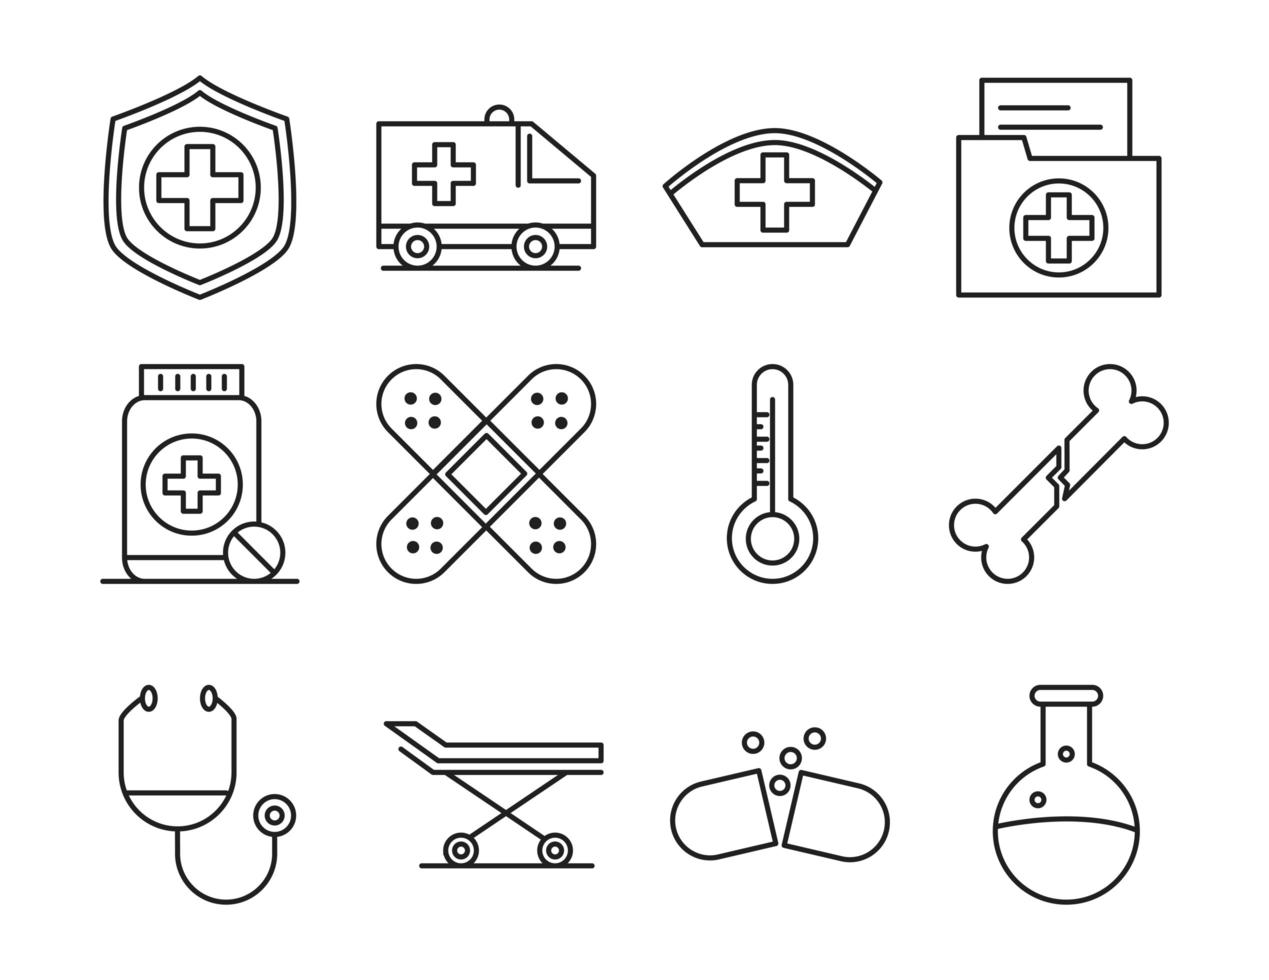 sjukvård medicinska och sjukhus piktogram linje stil ikoner set vektor